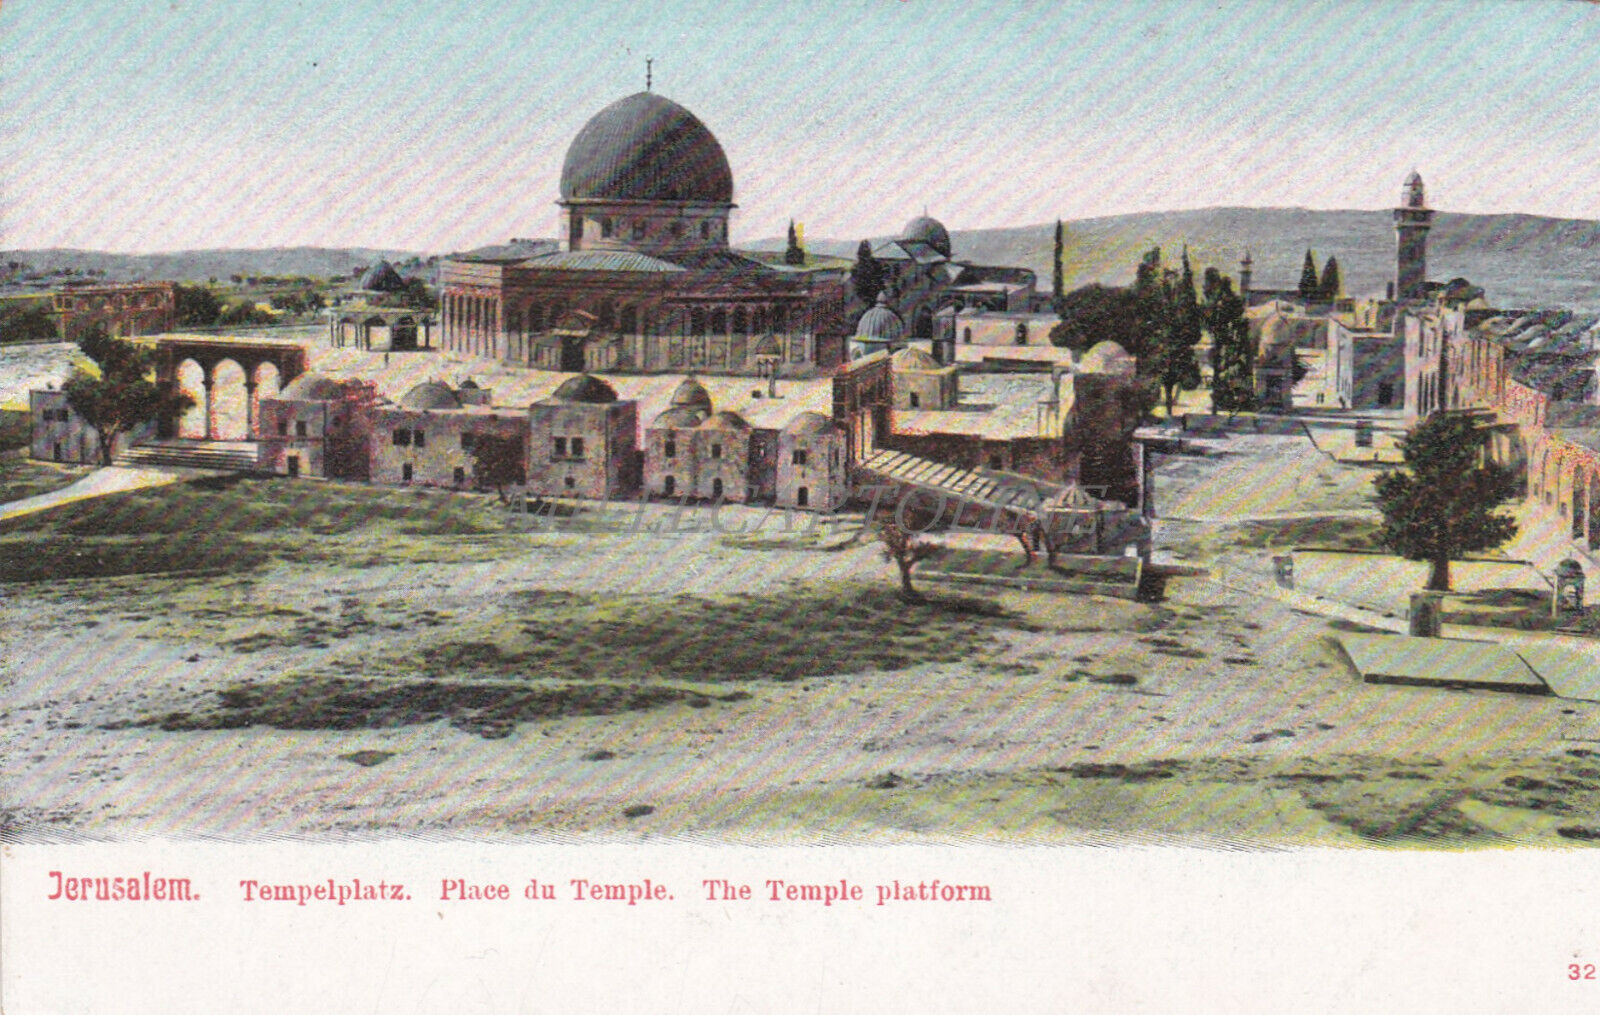 PALESTINE - Jerusalem, Tempelplatz